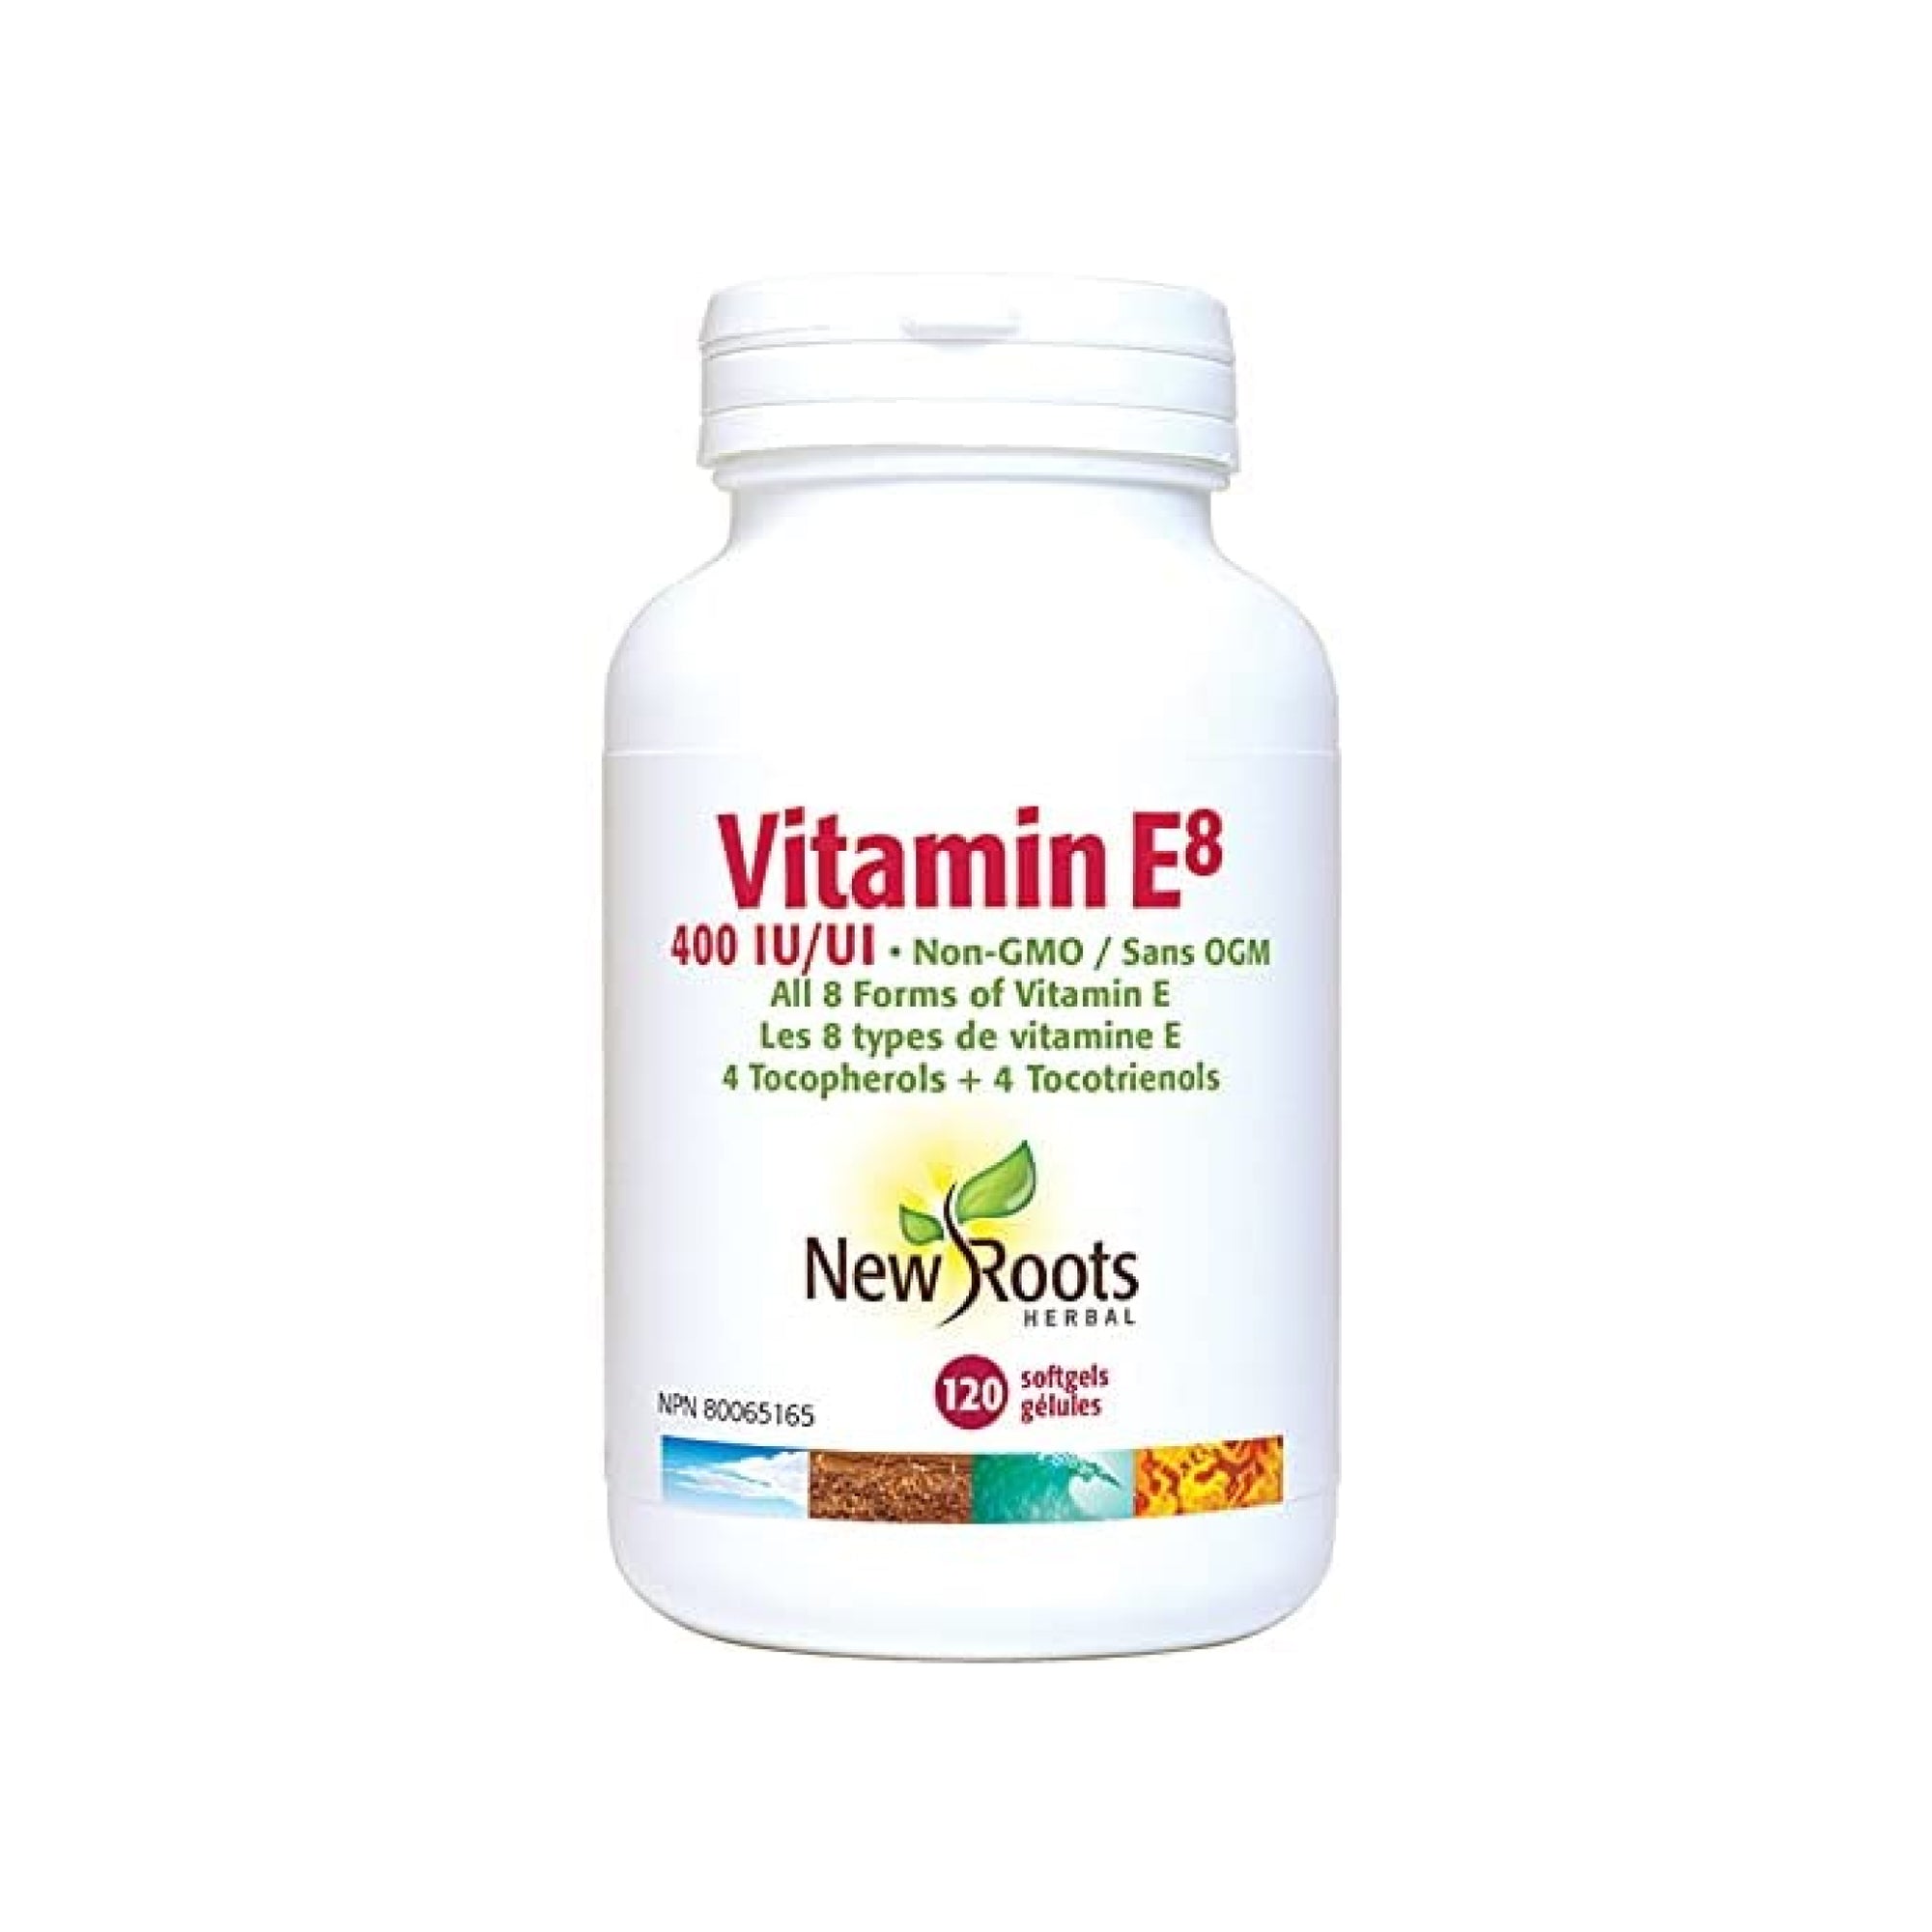 New Roots Vitamin E8 120s